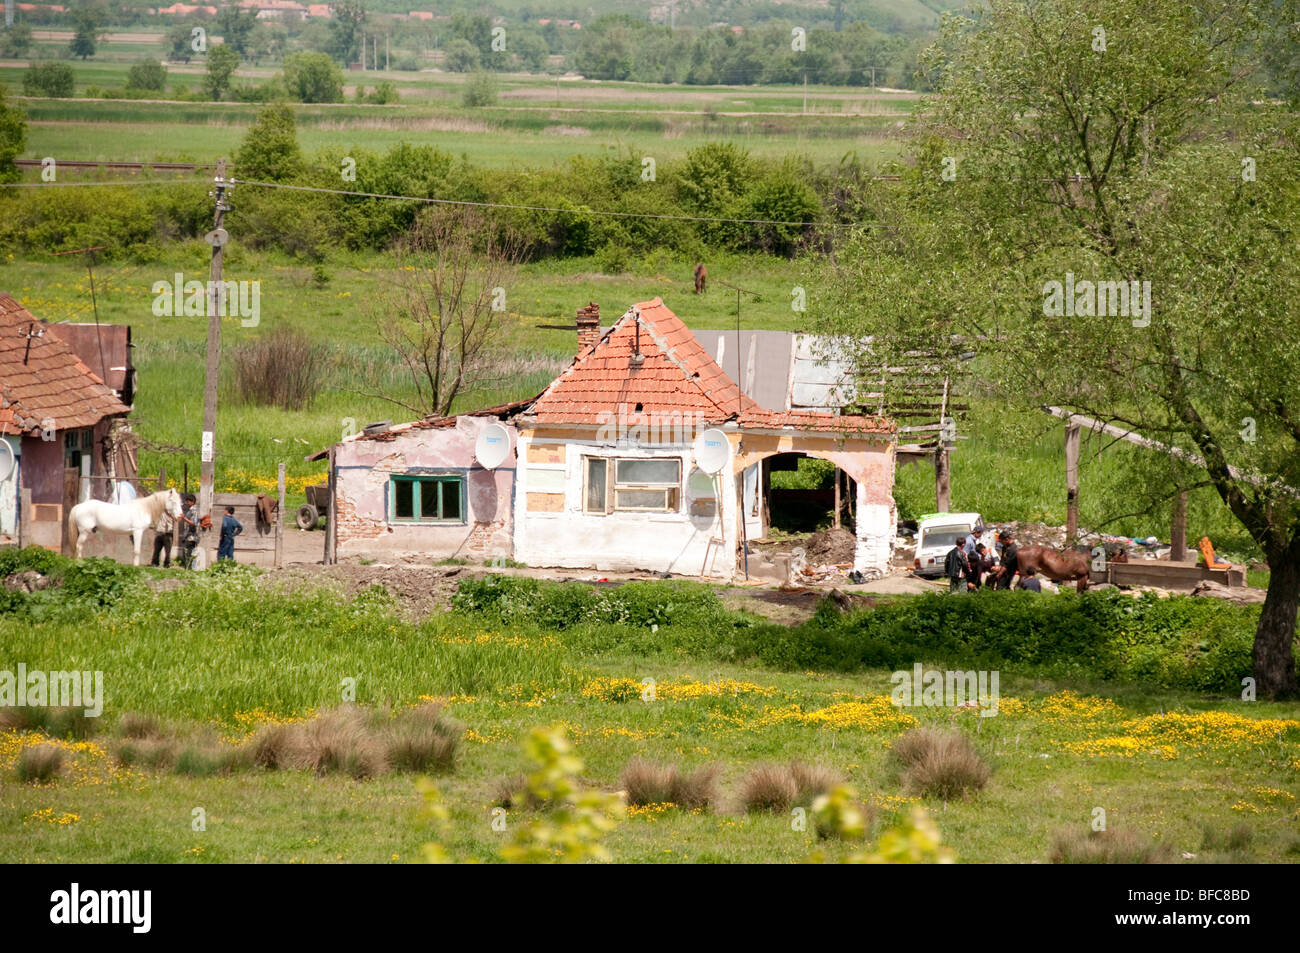 Traditionelle Roma Zigeuner Bauernhaus in einem schlechten Zustand in der Nähe von Kohlegruben-Rumänien-Osteuropa Stockfoto